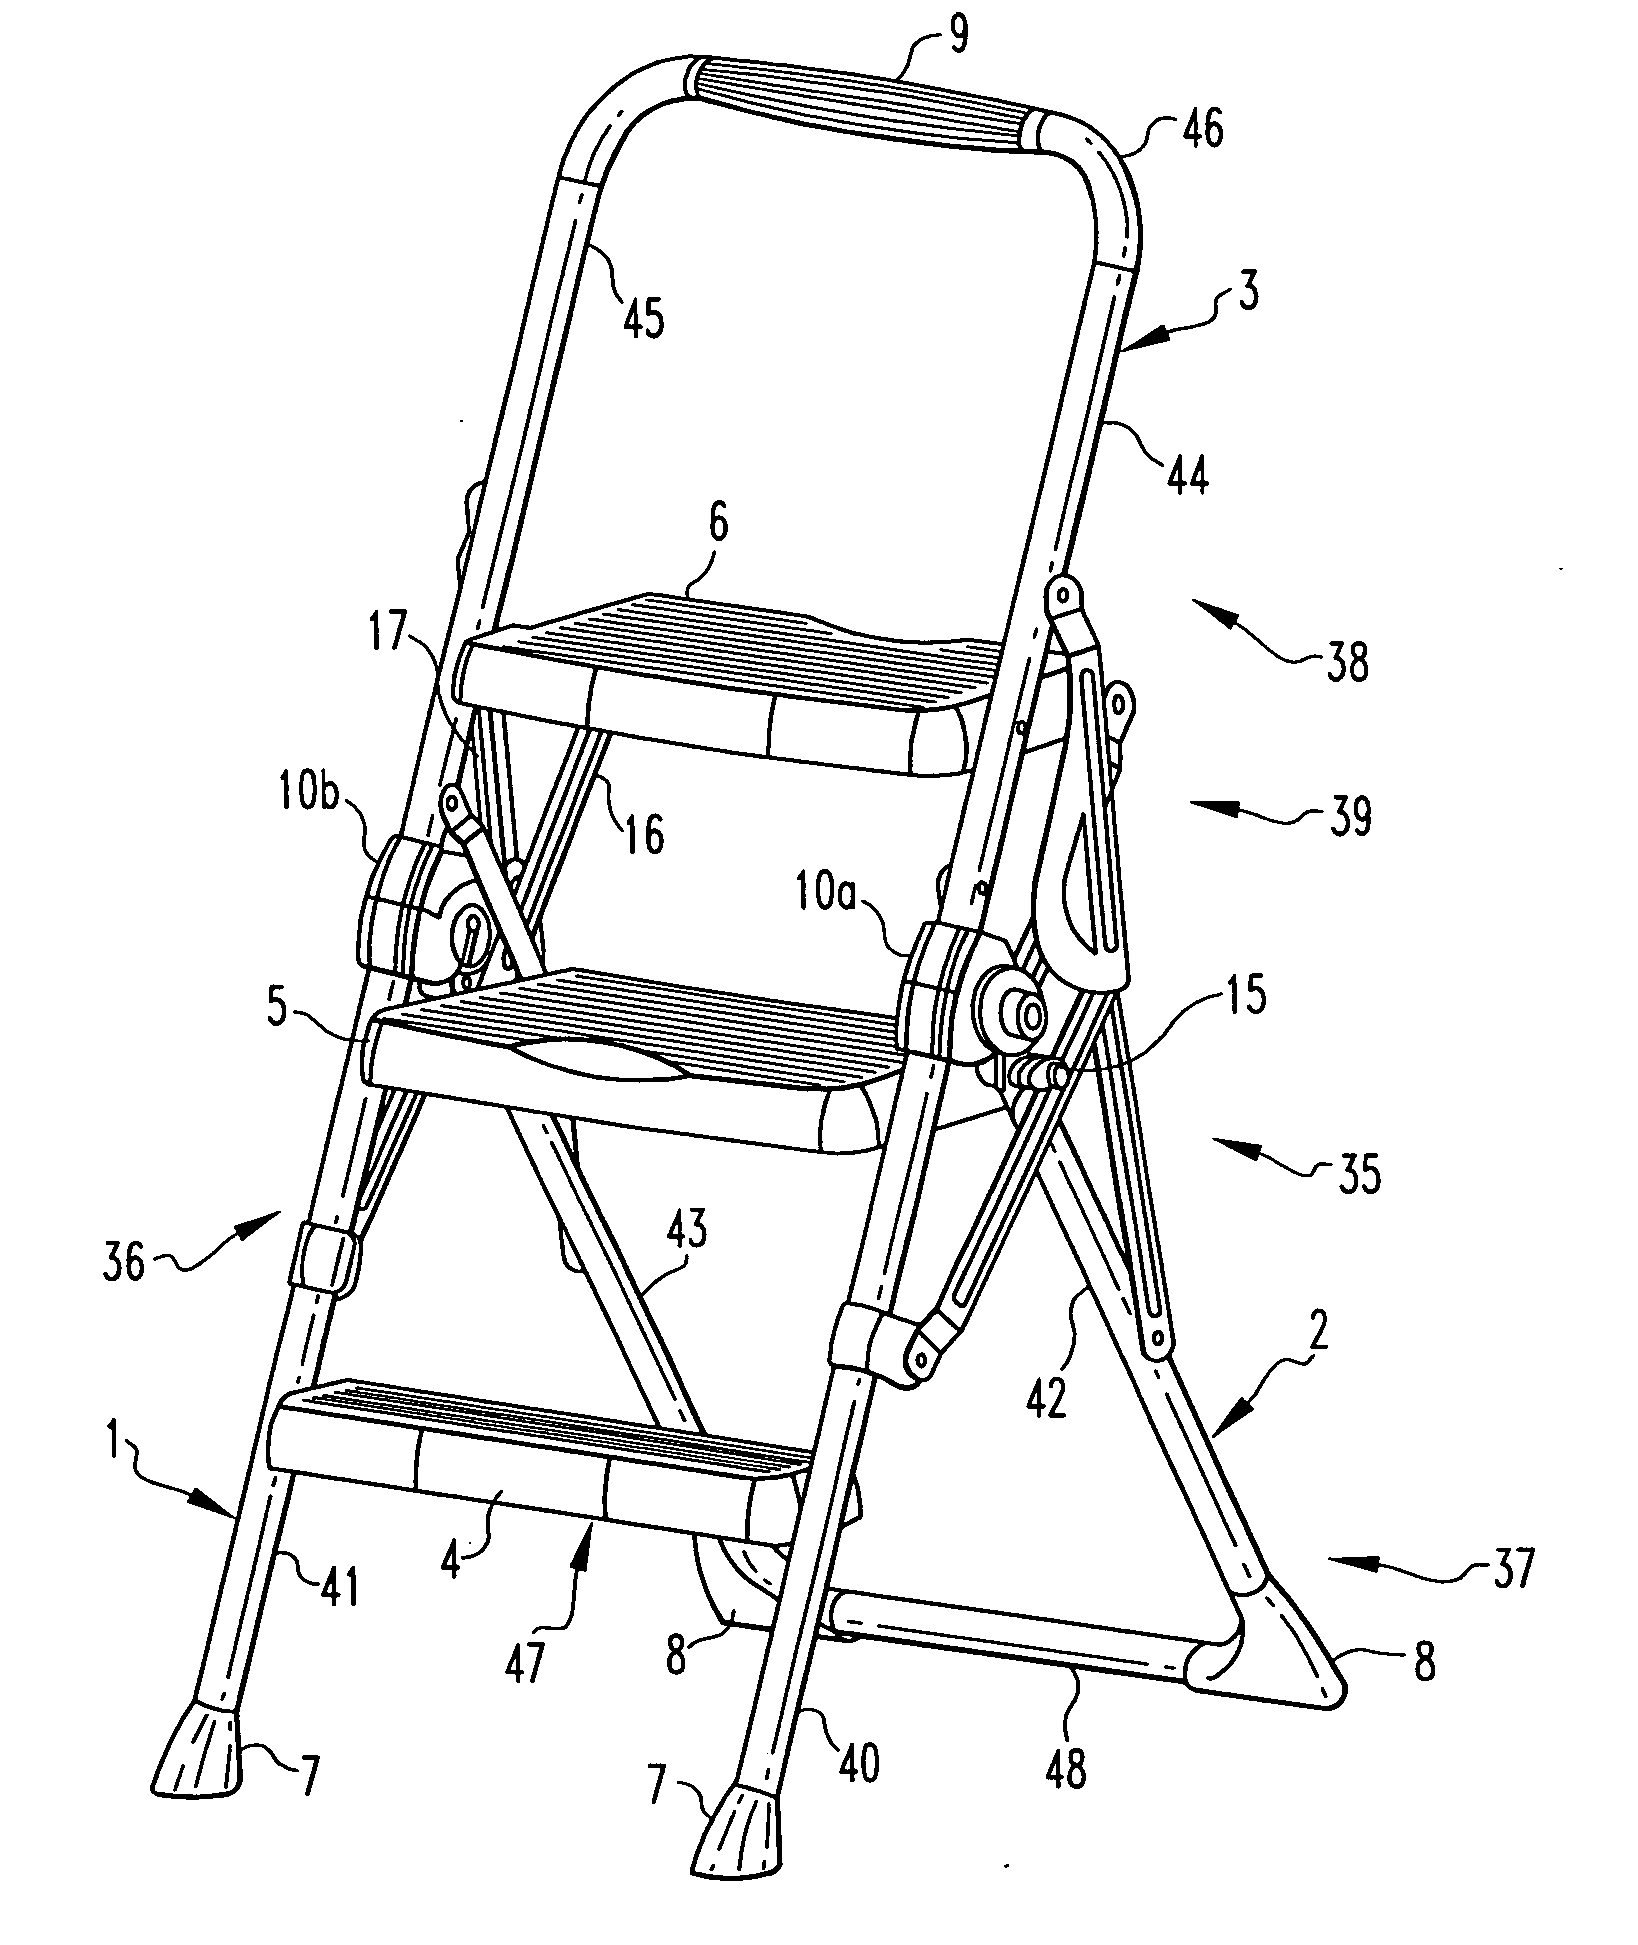 Step stool, hinge and method